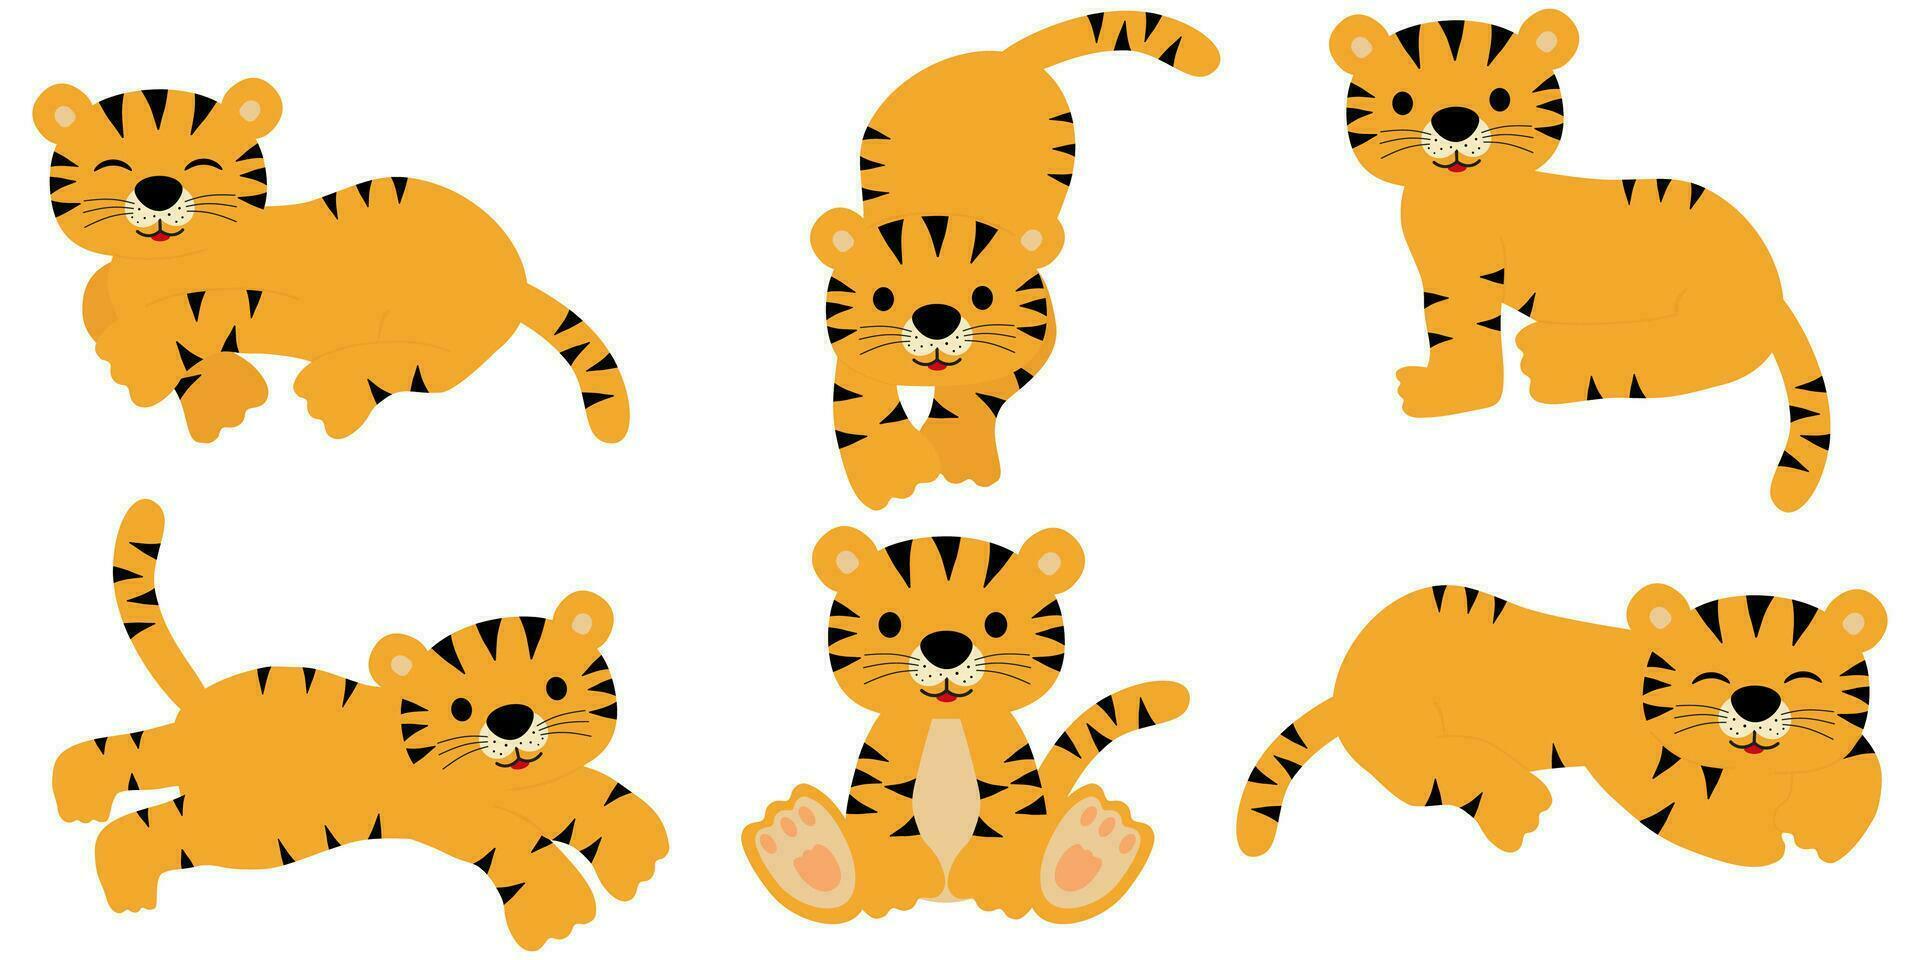 reeks van schattig tijger in verschillend poseert. de tijger staat, leugens, gaat, zit, slaapt, sprongen. vector illustratie